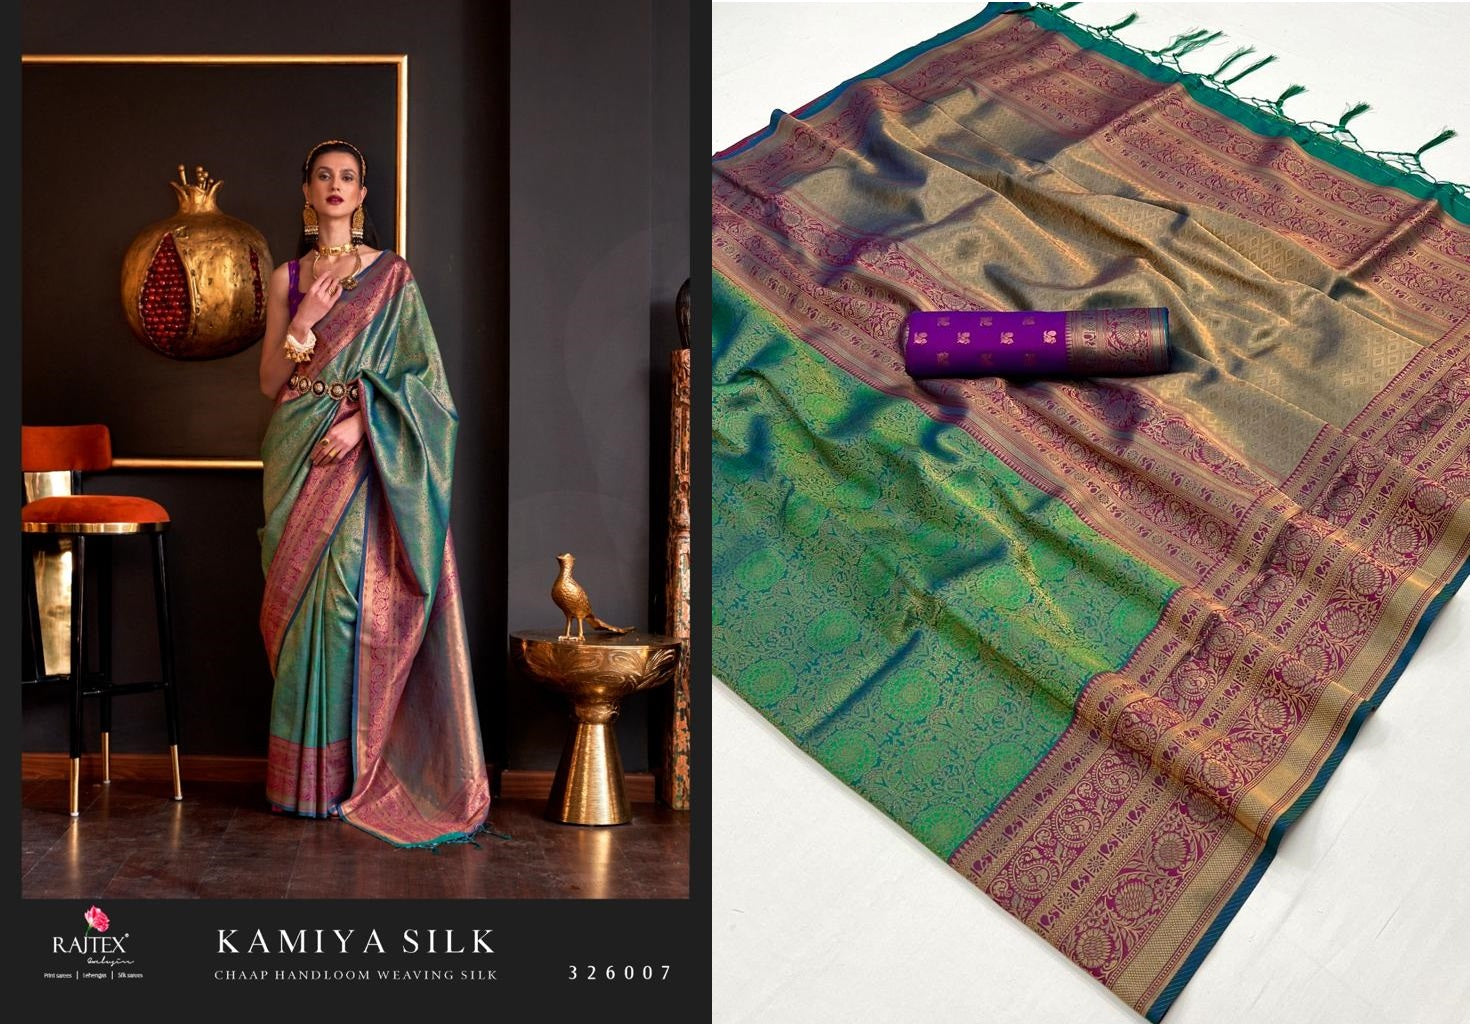 Kamiya Silk Rajtex Handloom Weaving Sarees